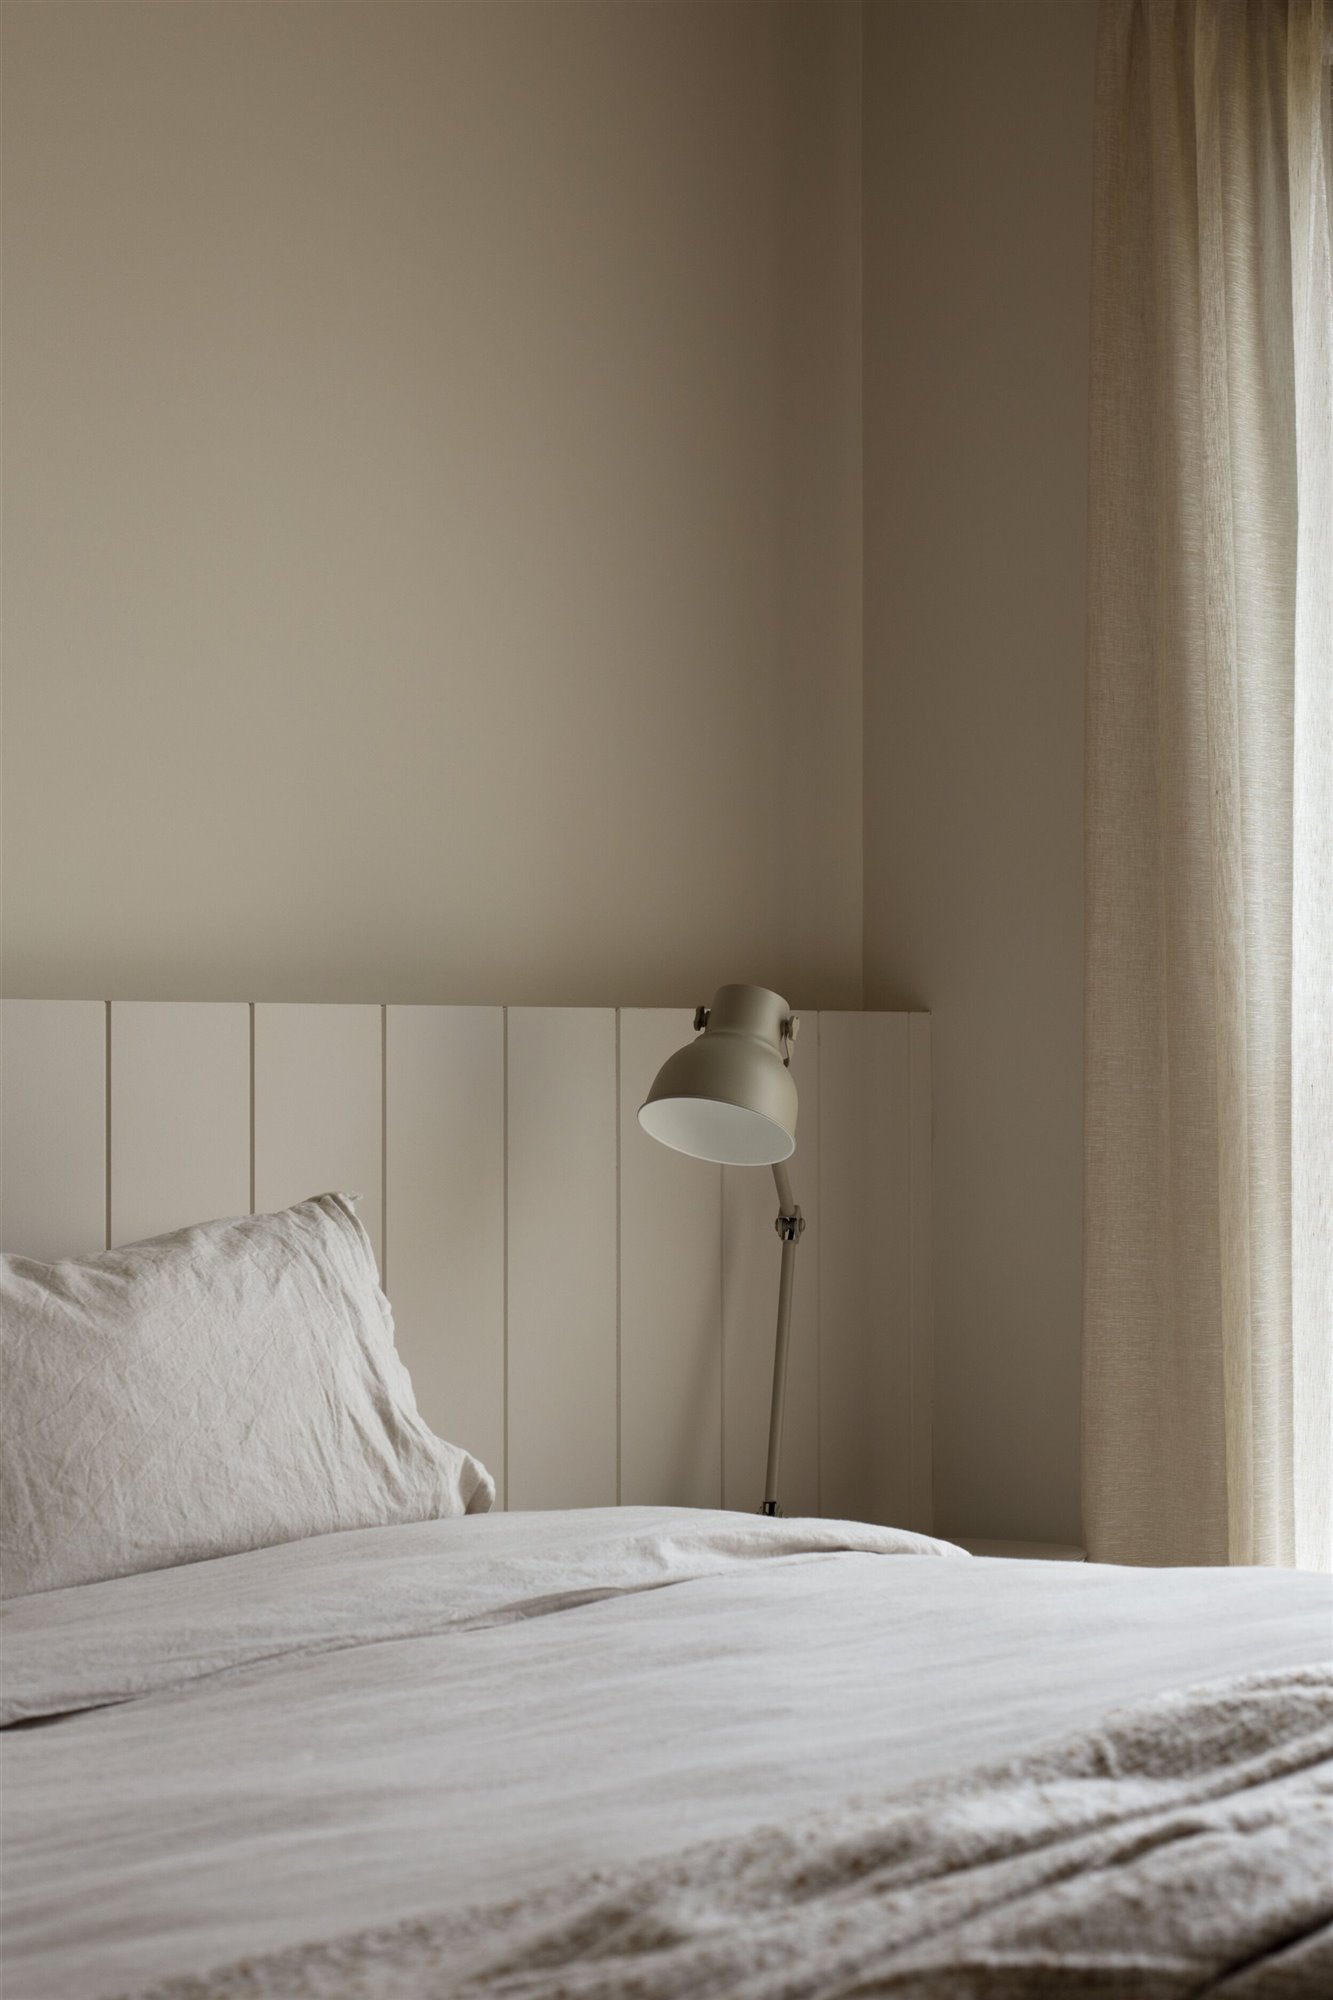 Dormitorio de tonos neutros con cama con lampara en mesilla de noche